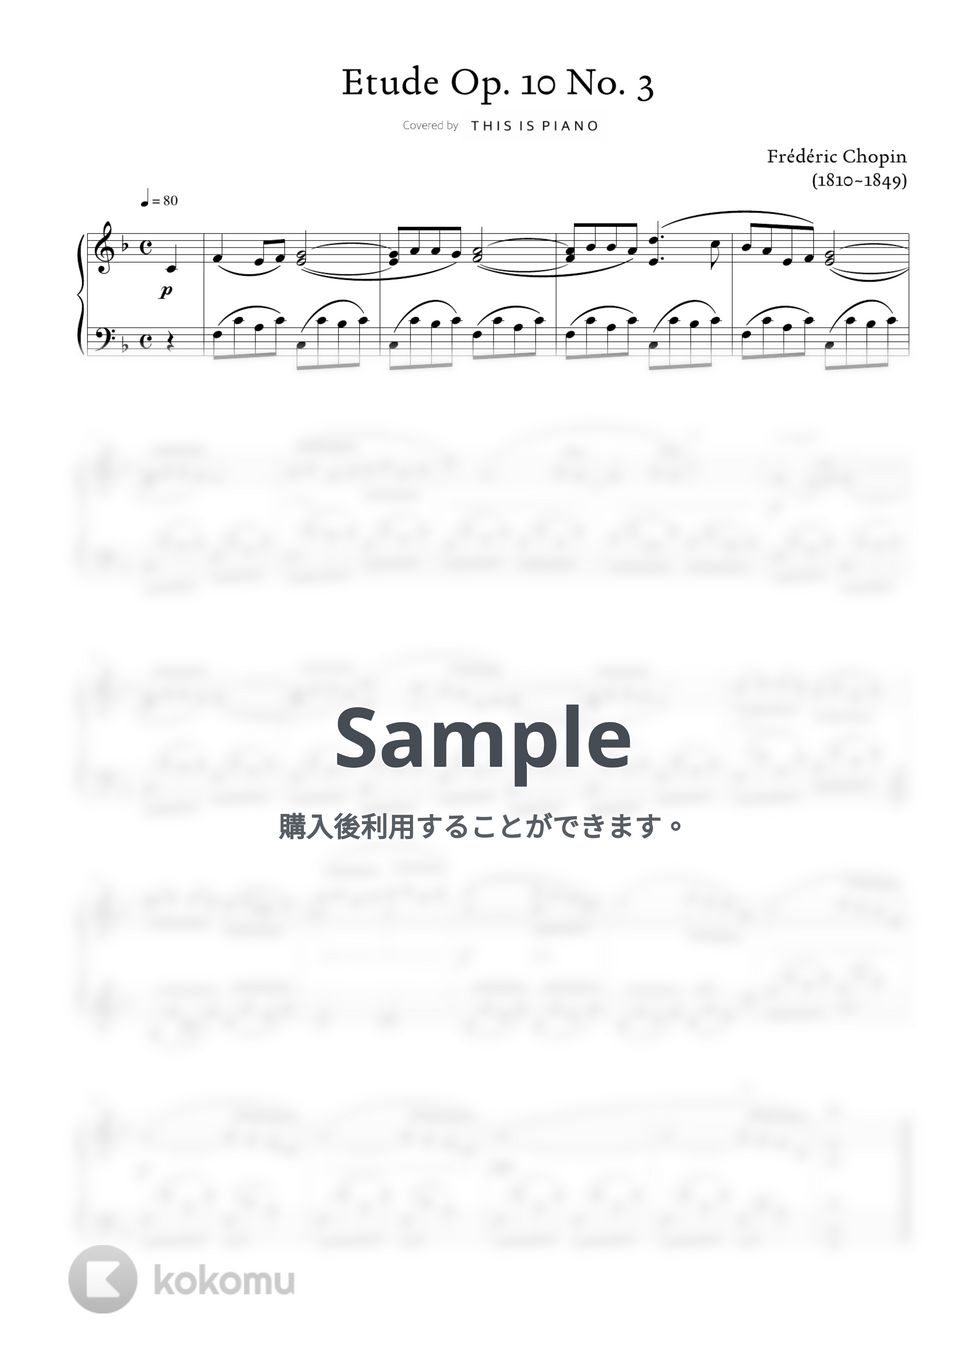 ショパン(F. Chopin) - エチュードOp. 10 No. 3 (別れの曲) (中級バージョン) by THIS IS PIANO